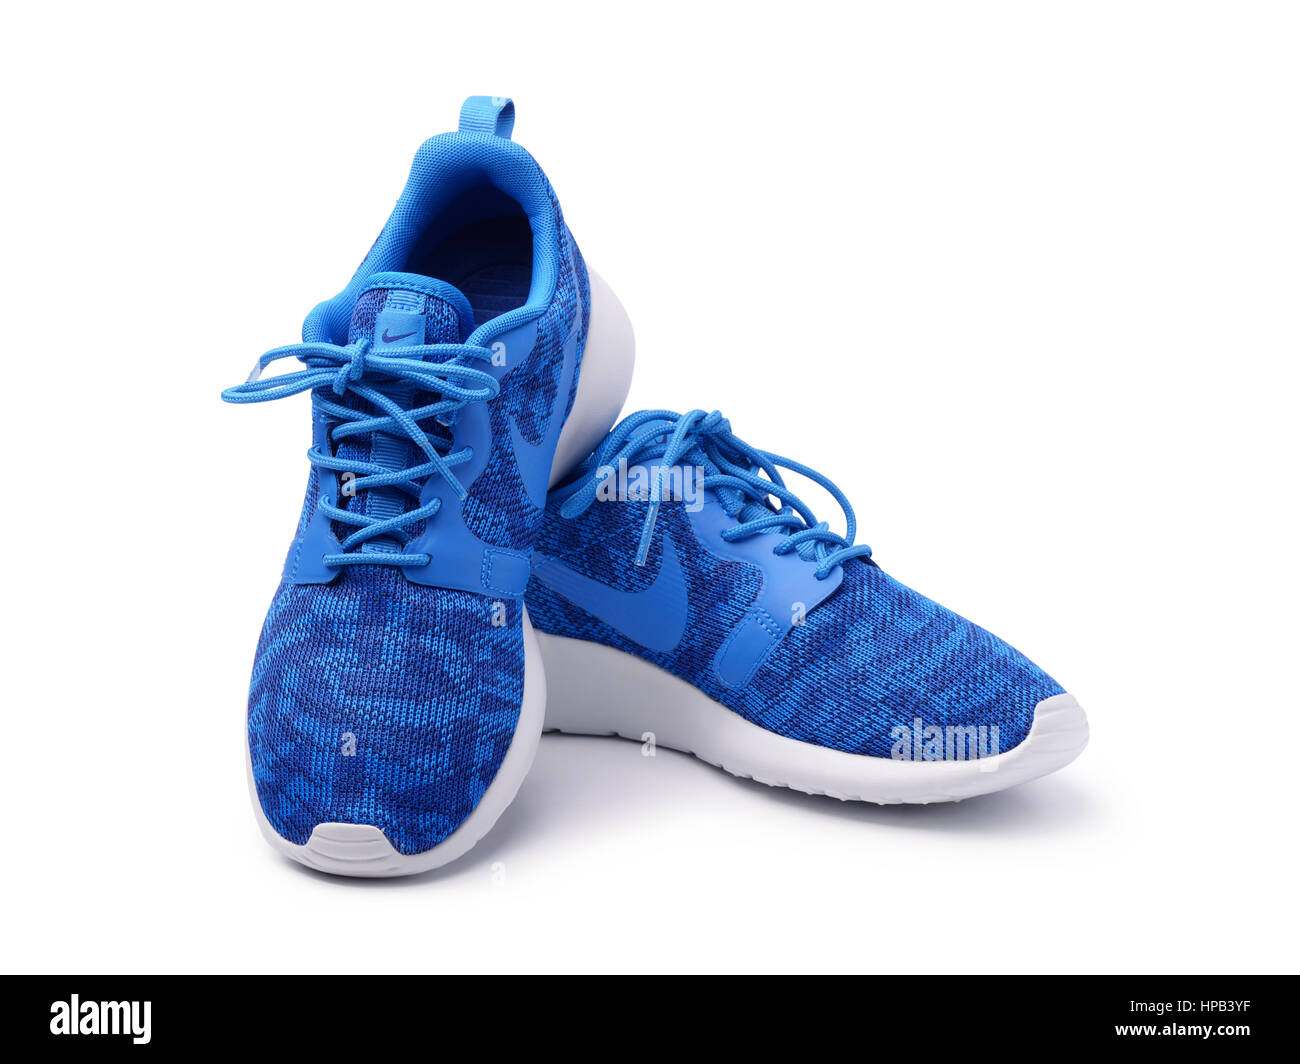 Ejercicio mañanero espíritu Fugaz SAMARA, Rusia - Junio 8, 2015: mujer Nike zapatillas para correr,  entrenamiento, en gris y azul, mostrando el logo de Nike, a título  ilustrativo, la editorial Fotografía de stock - Alamy